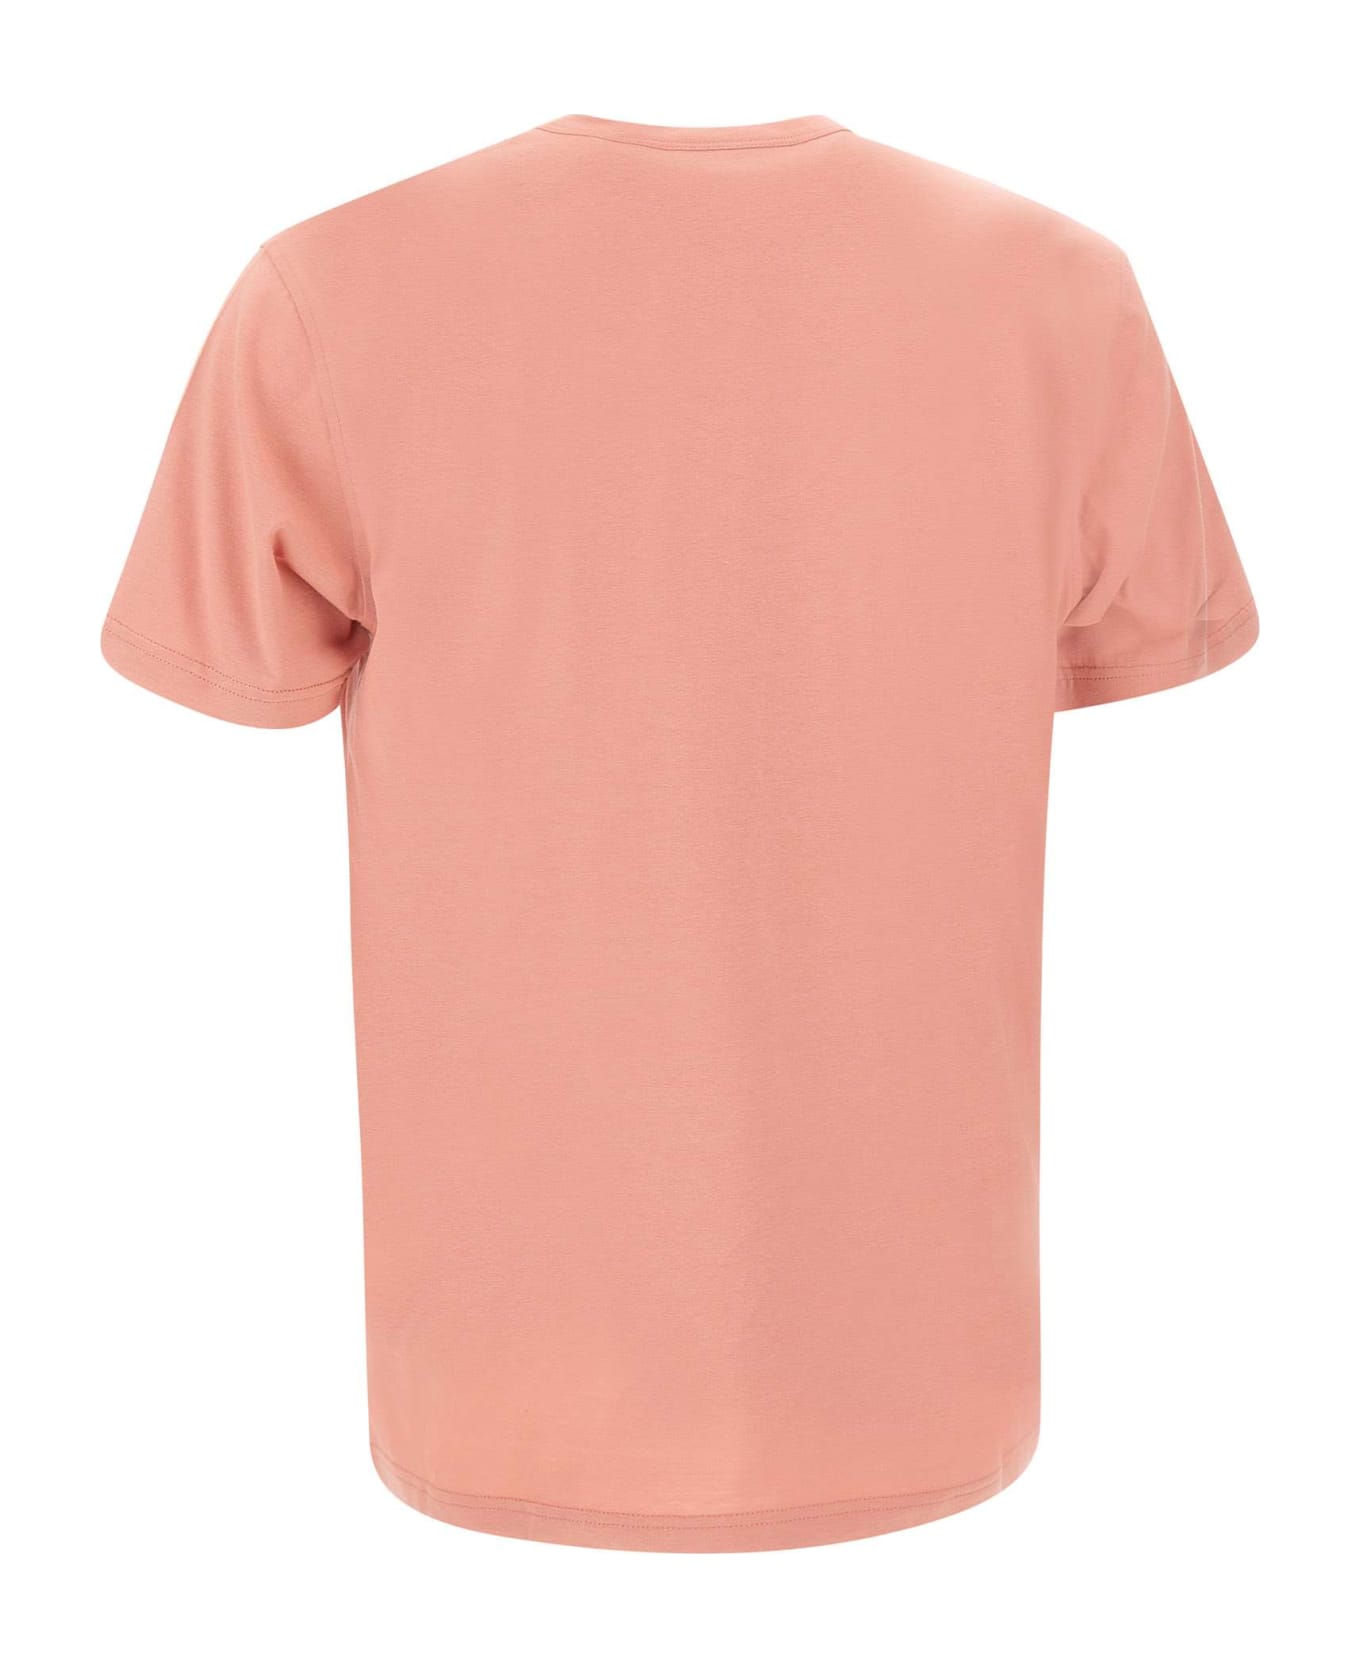 Belstaff Cotton T-shirt - PINK